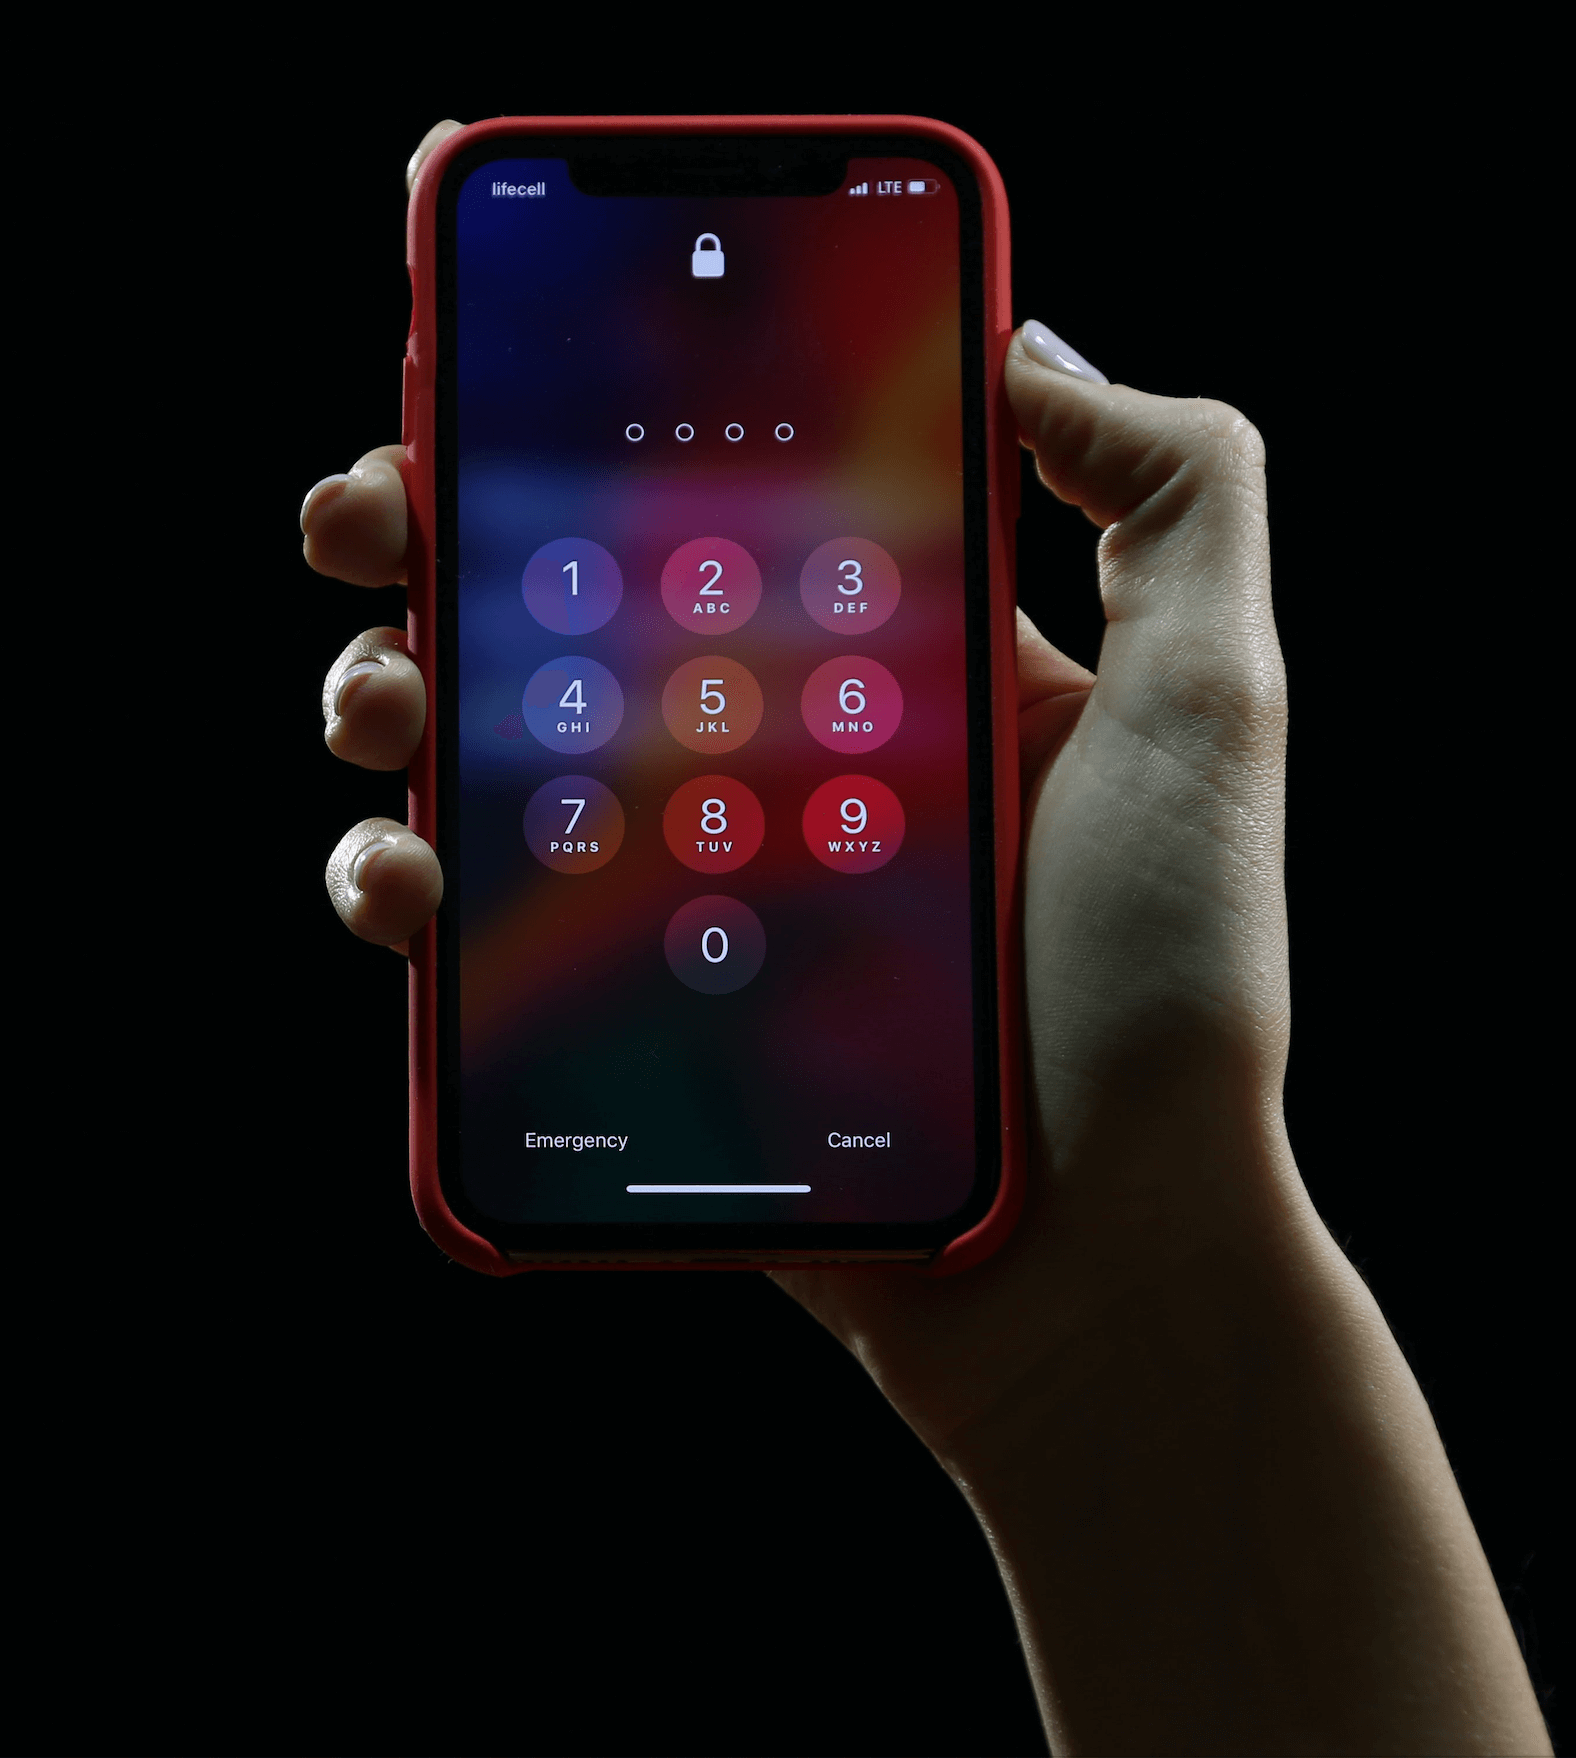 Eine Hand hält ein iPhone vor schwarzem Hintergrund. Der Bildschirm des Smartphones ist versperrt und der Dialog zur Eingabe der PIN ist sichtbar.